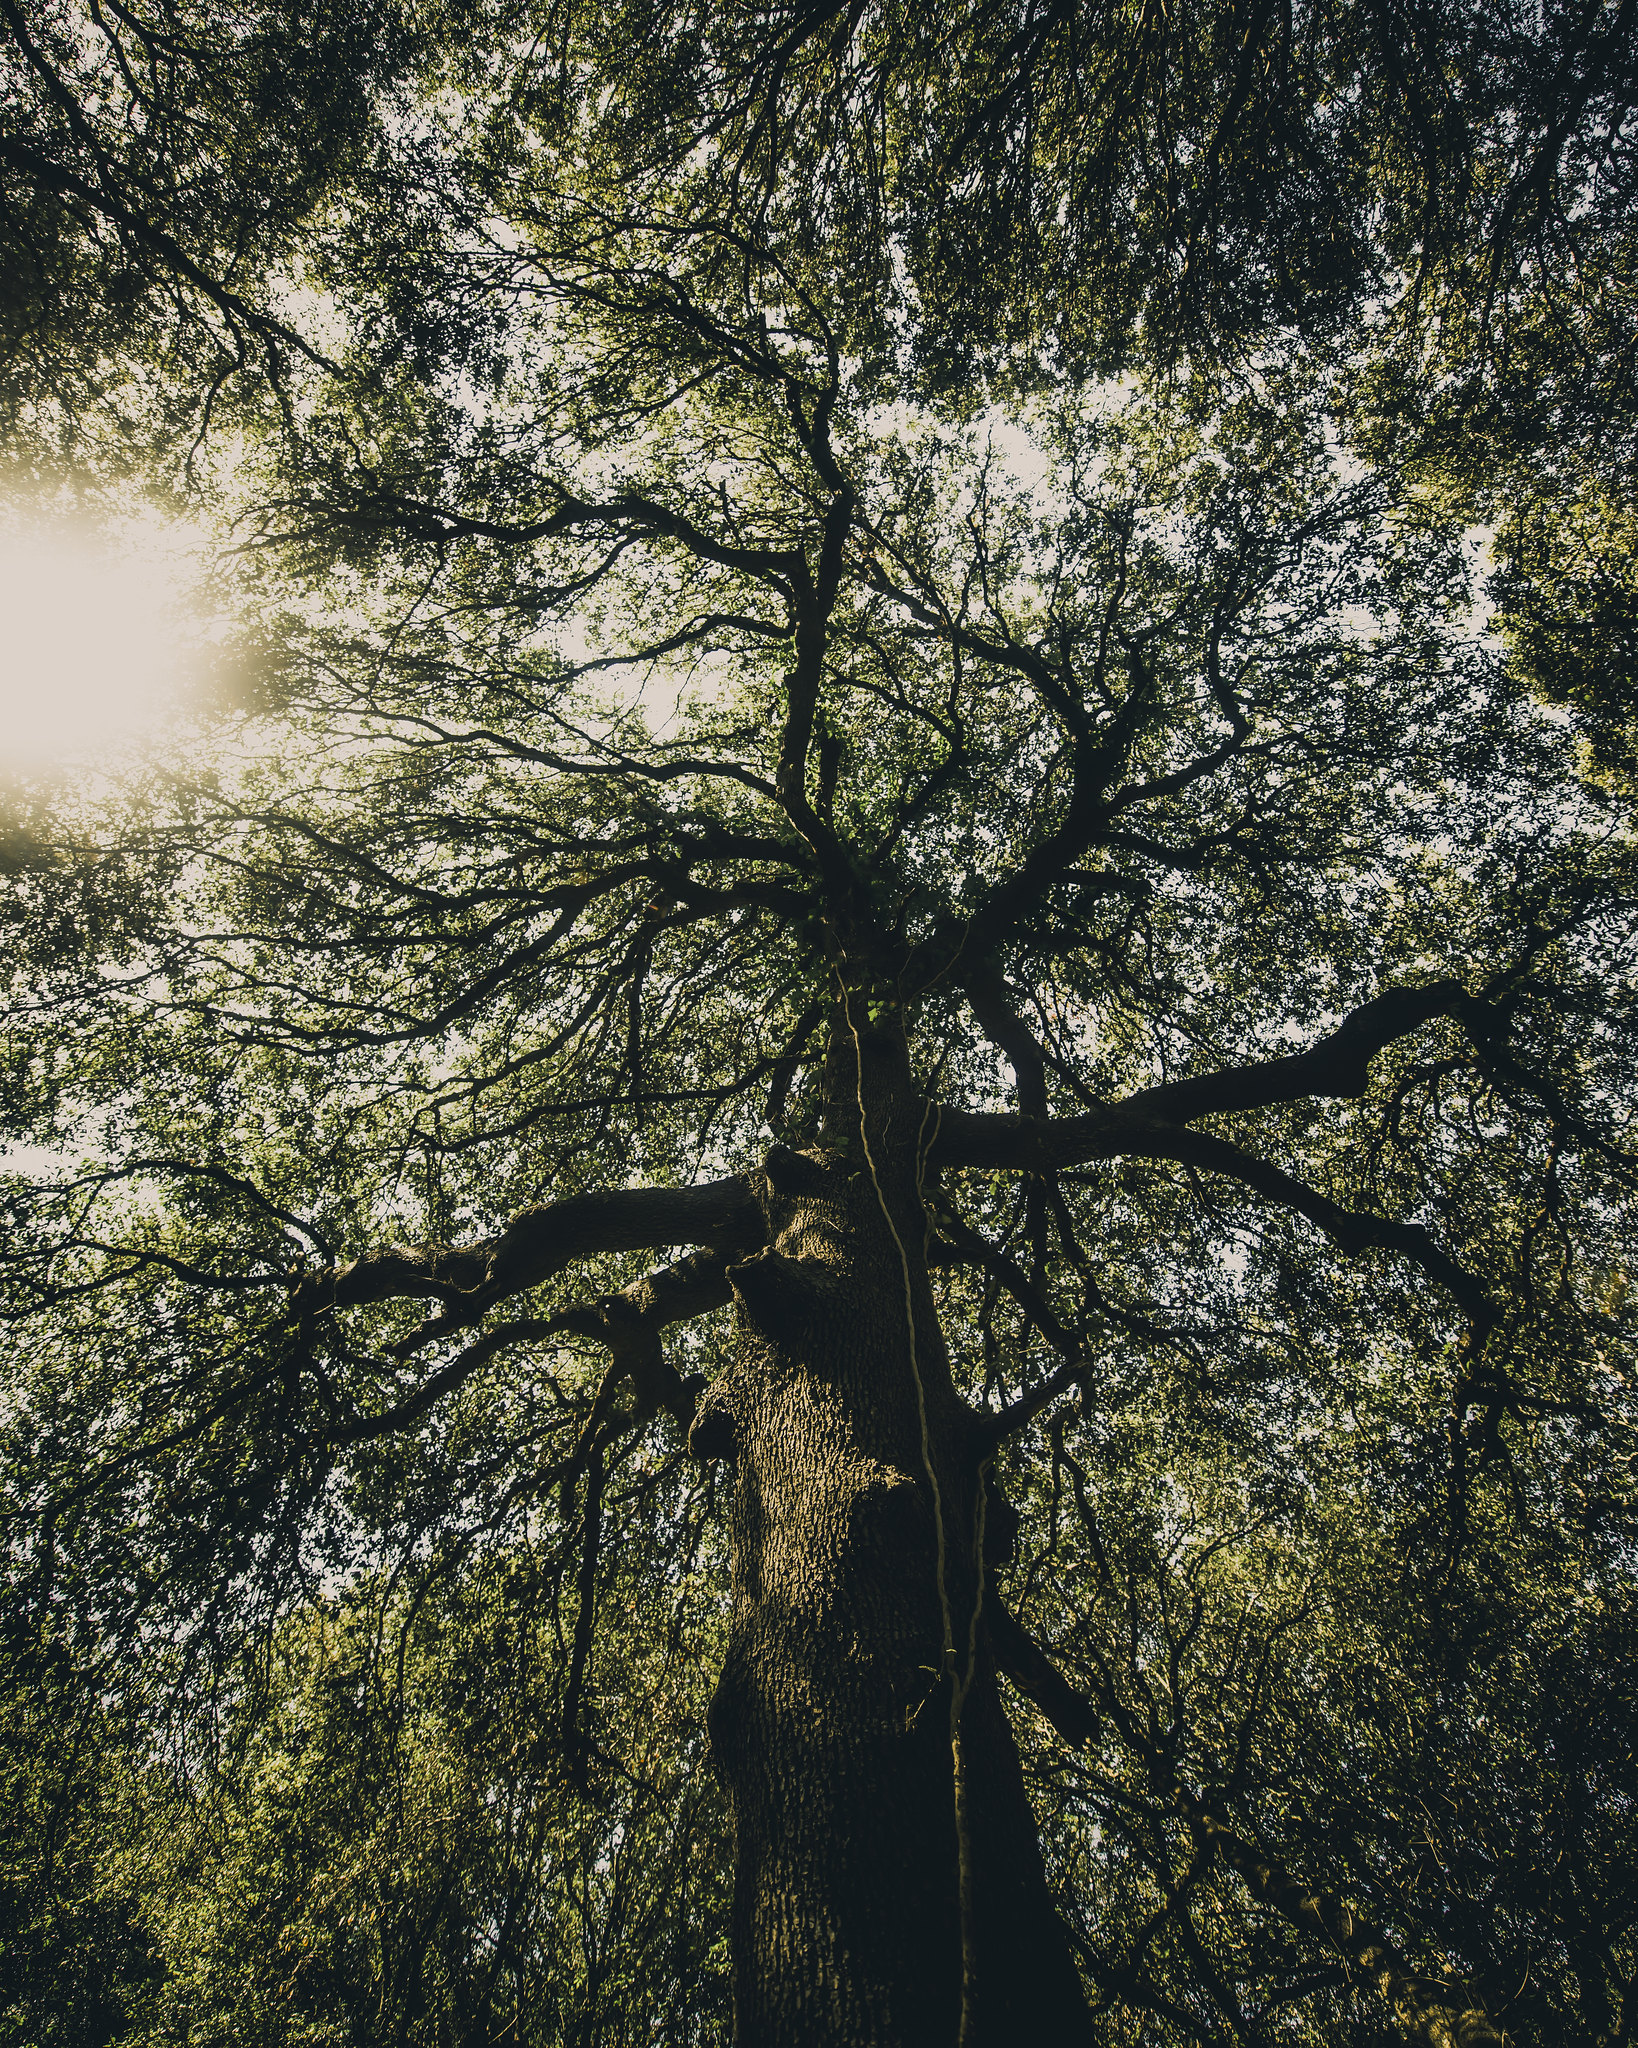 Photograph of an Oak Tree by Konsta Punkka.